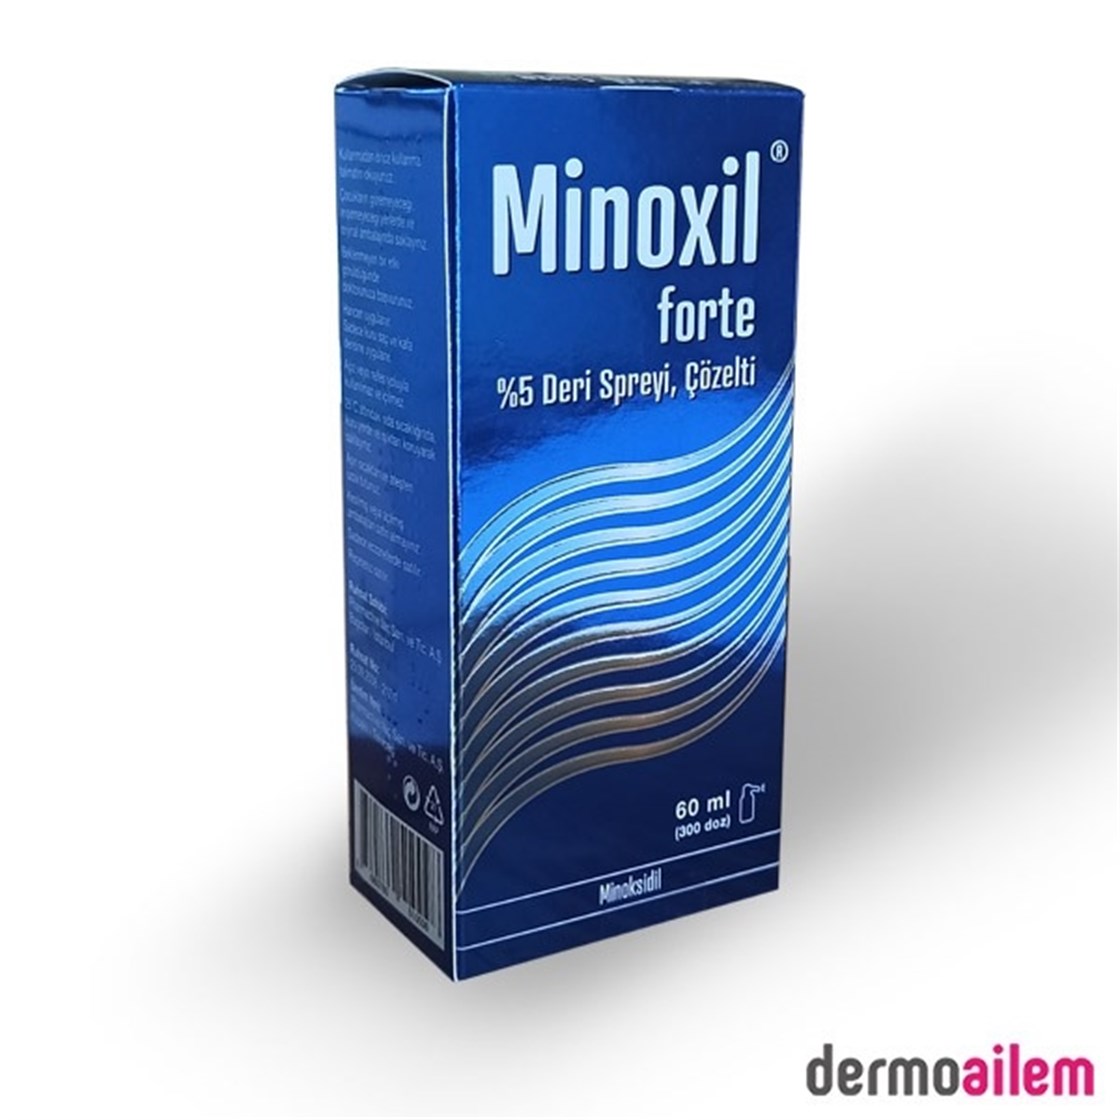 Minoxil Forte Deri Spreyi %5 60 ml İndirimli Fiyatlar | Dermoailem.com